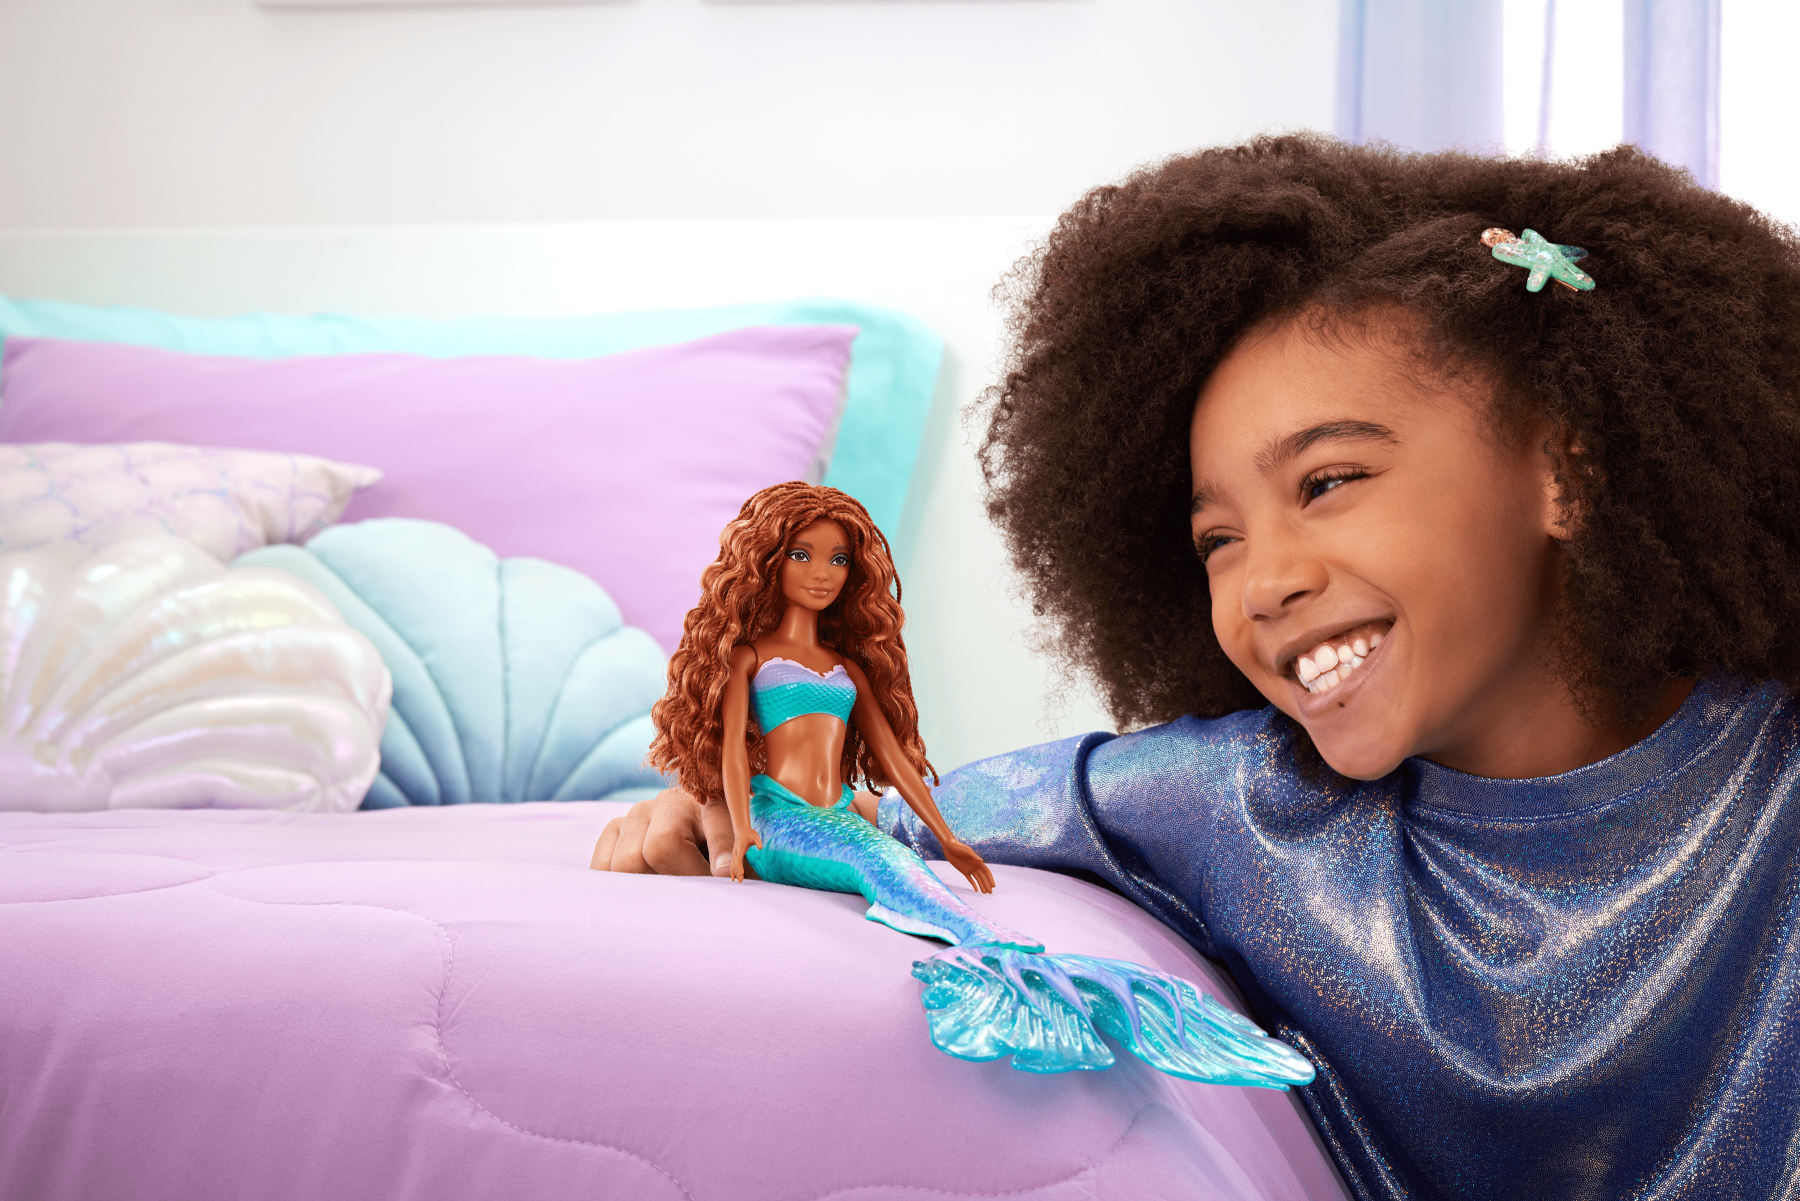 Disney la sirenetta - ariel, bambola con l'iconica coda da sirena colorata e glitterata e lunghi capelli rossi da acconciare, look ispirato al film, giocattolo per bambini, 3+ anni, hlx08 - DISNEY PRINCESS